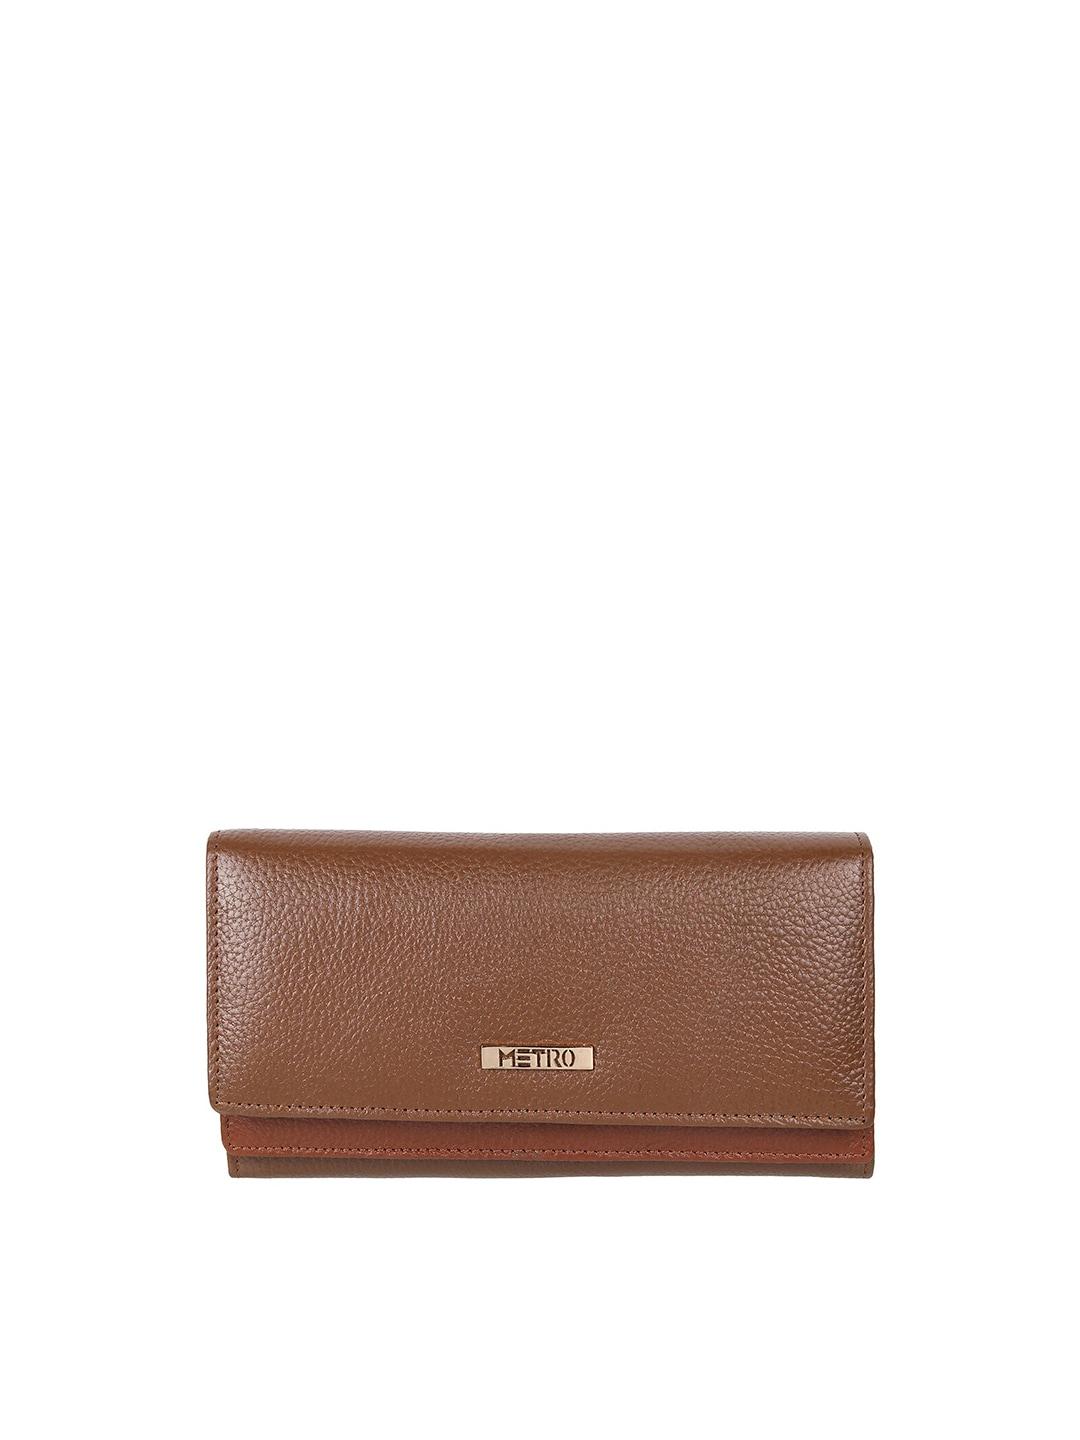 metro-women-leather-two-fold-wallet